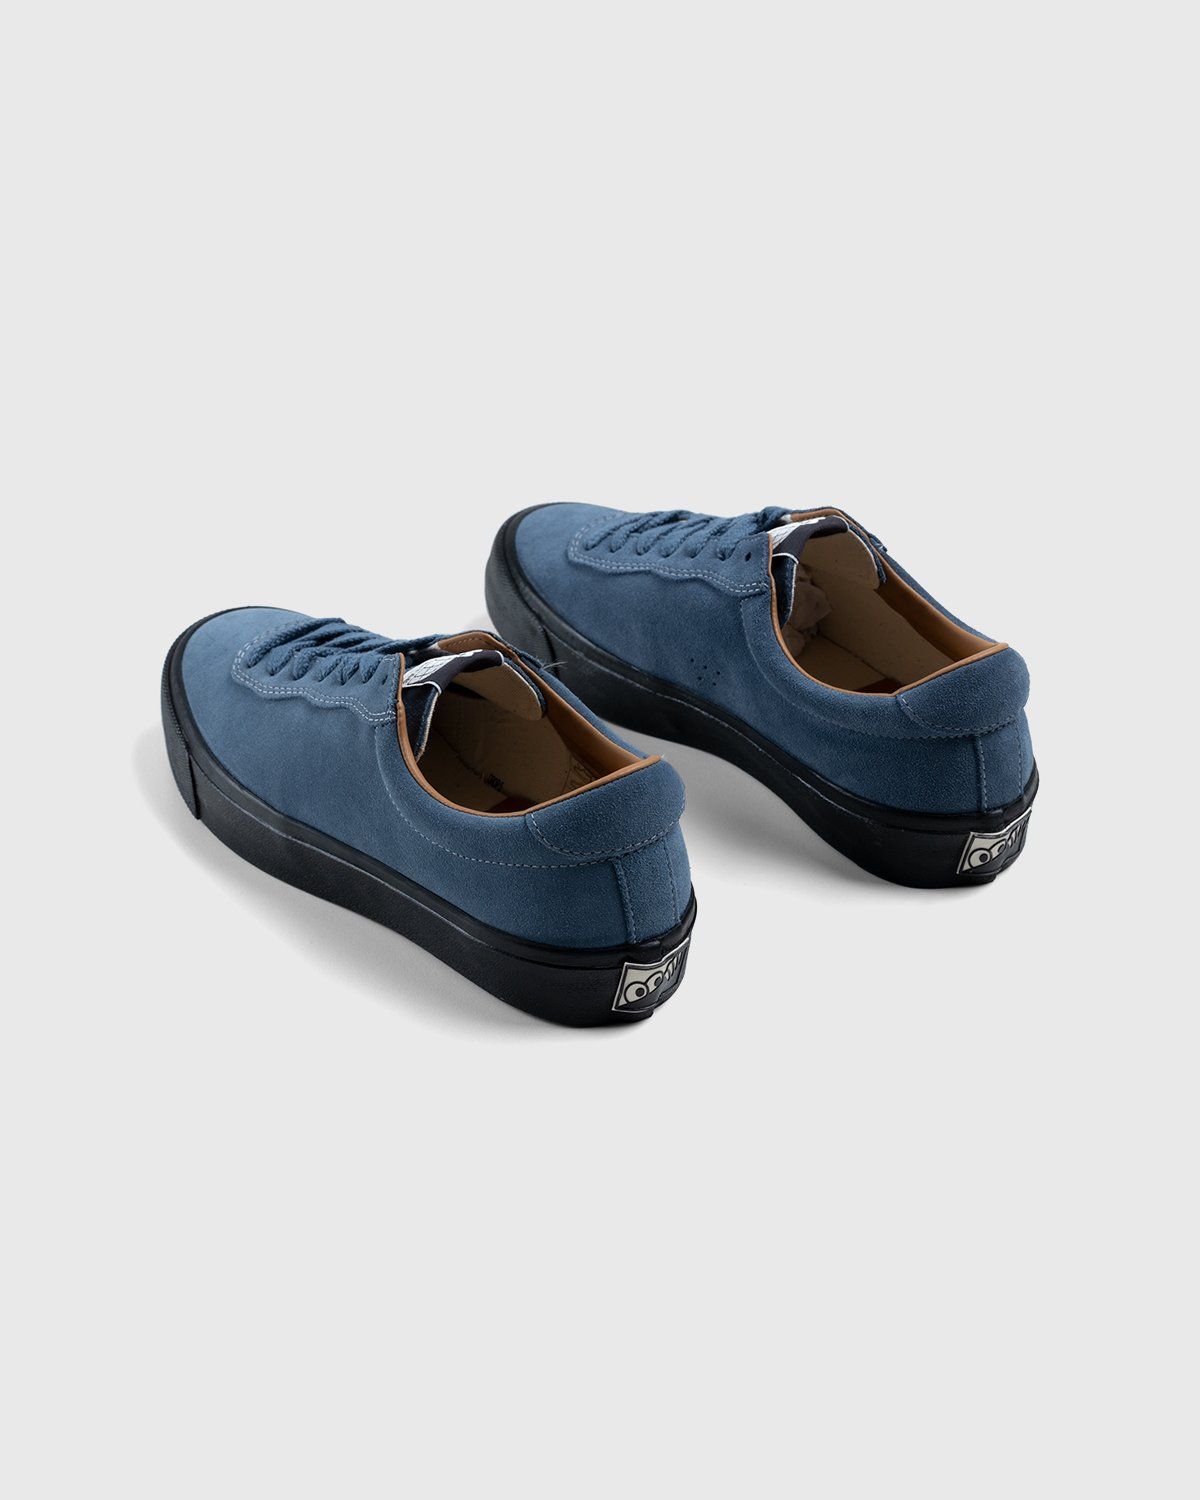 Last Resort AB – VM001 Suede Lo Blue/Black - Low Top Sneakers - Blue - Image 4